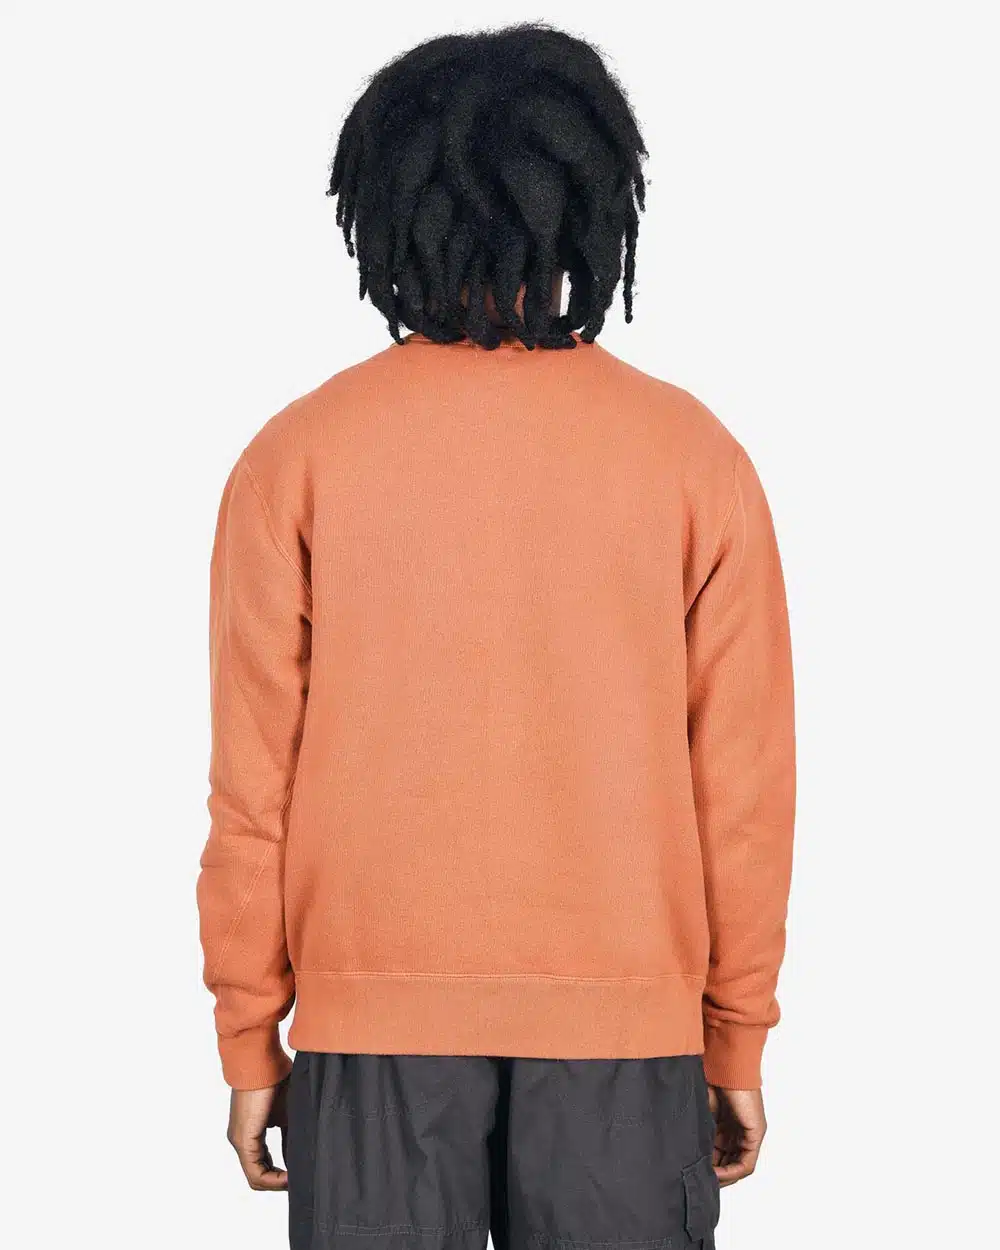 Loop & Weft Tompkins Knit Crewneck Sweatshirt - Orange Brown